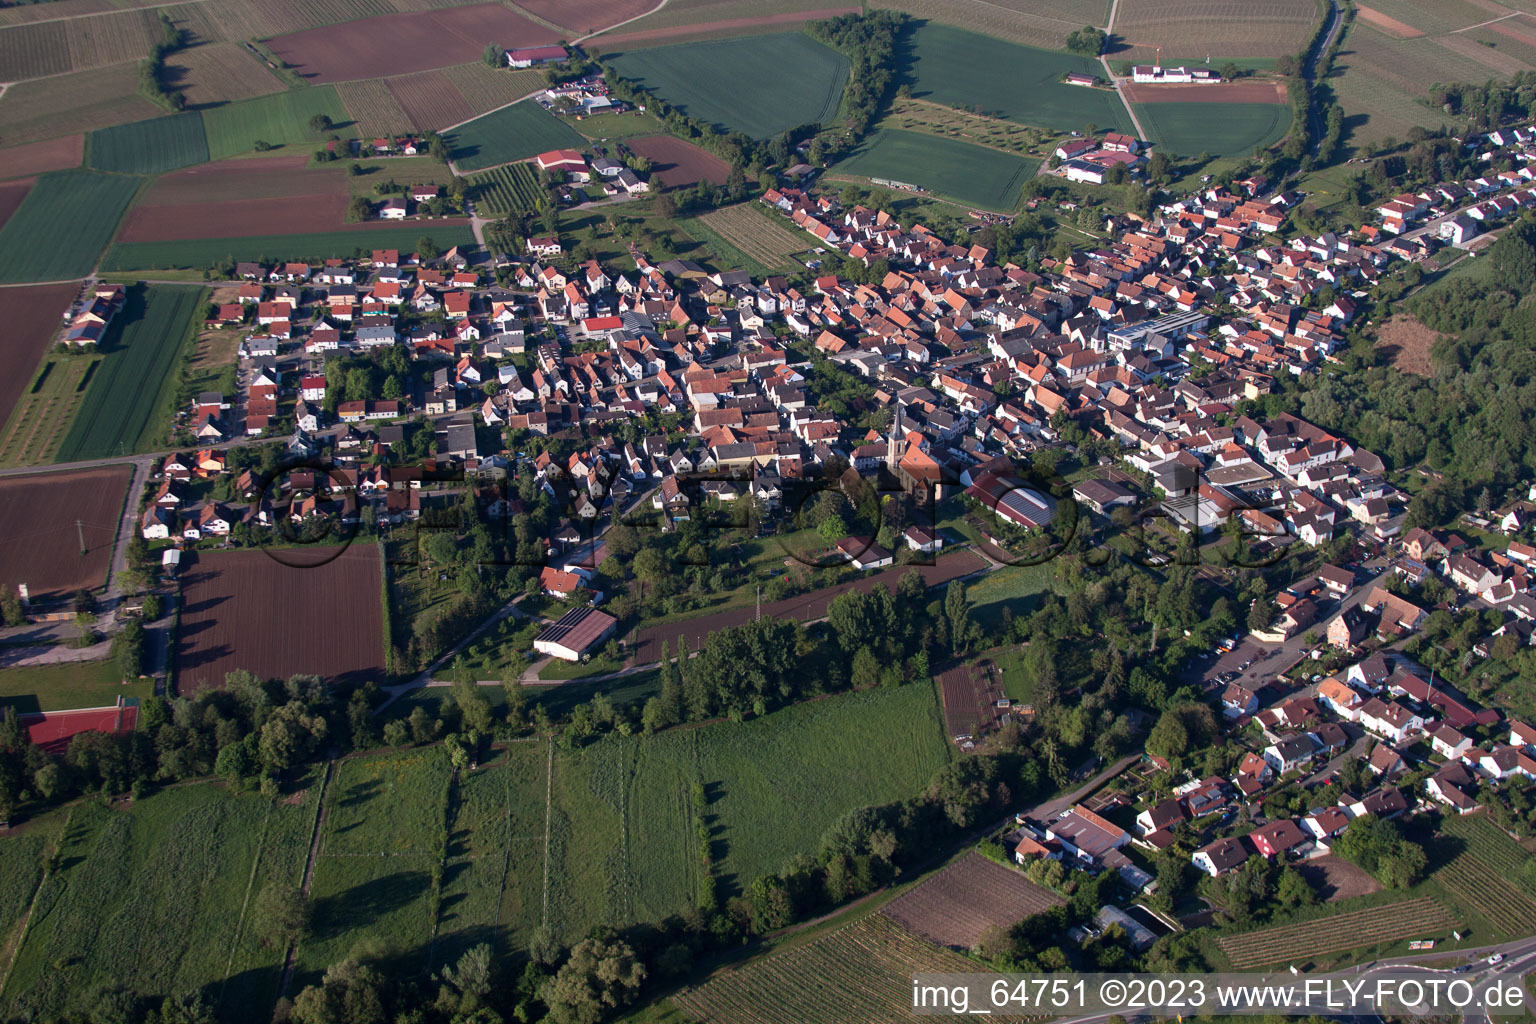 District Billigheim in Billigheim-Ingenheim in the state Rhineland-Palatinate, Germany seen from above